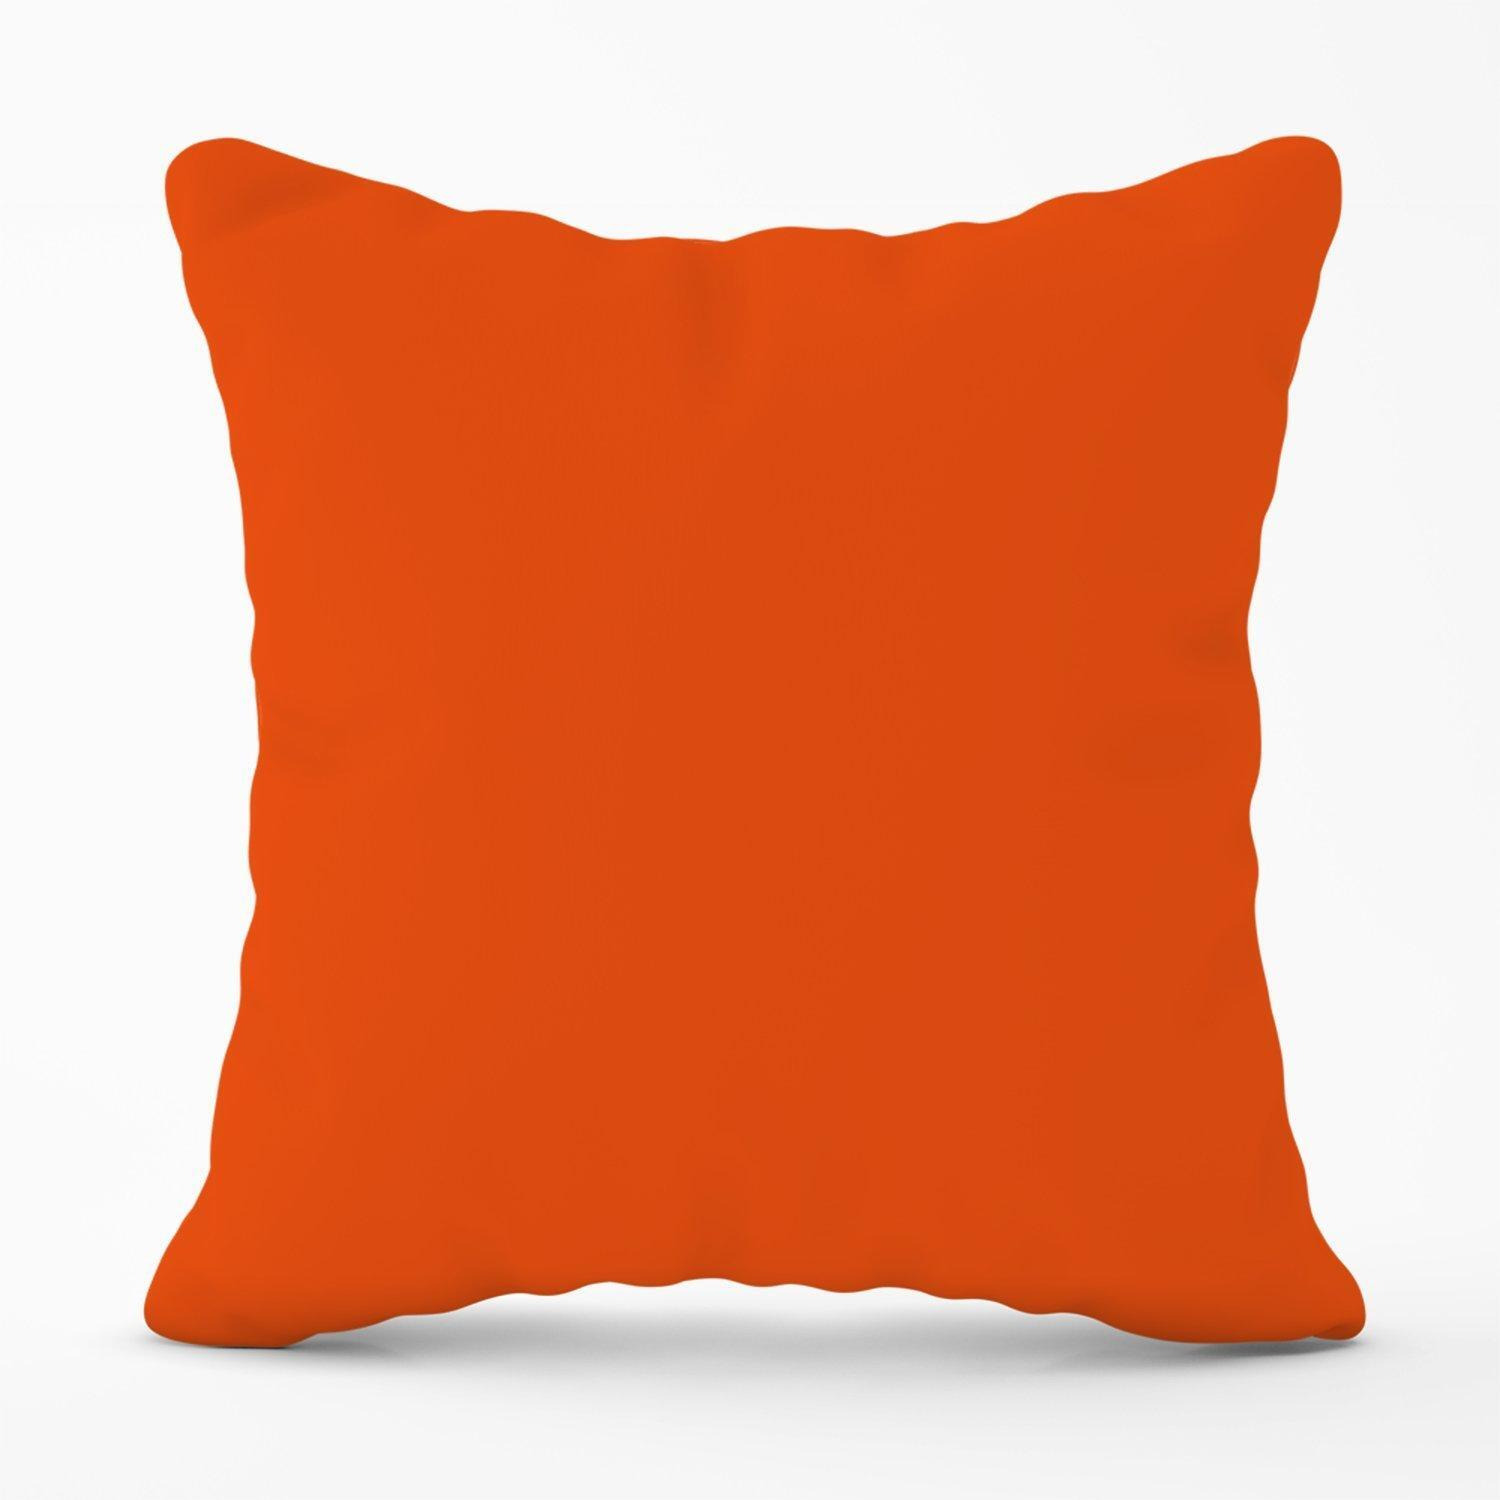 Burnt Orange Outdoor Cushion - image 1